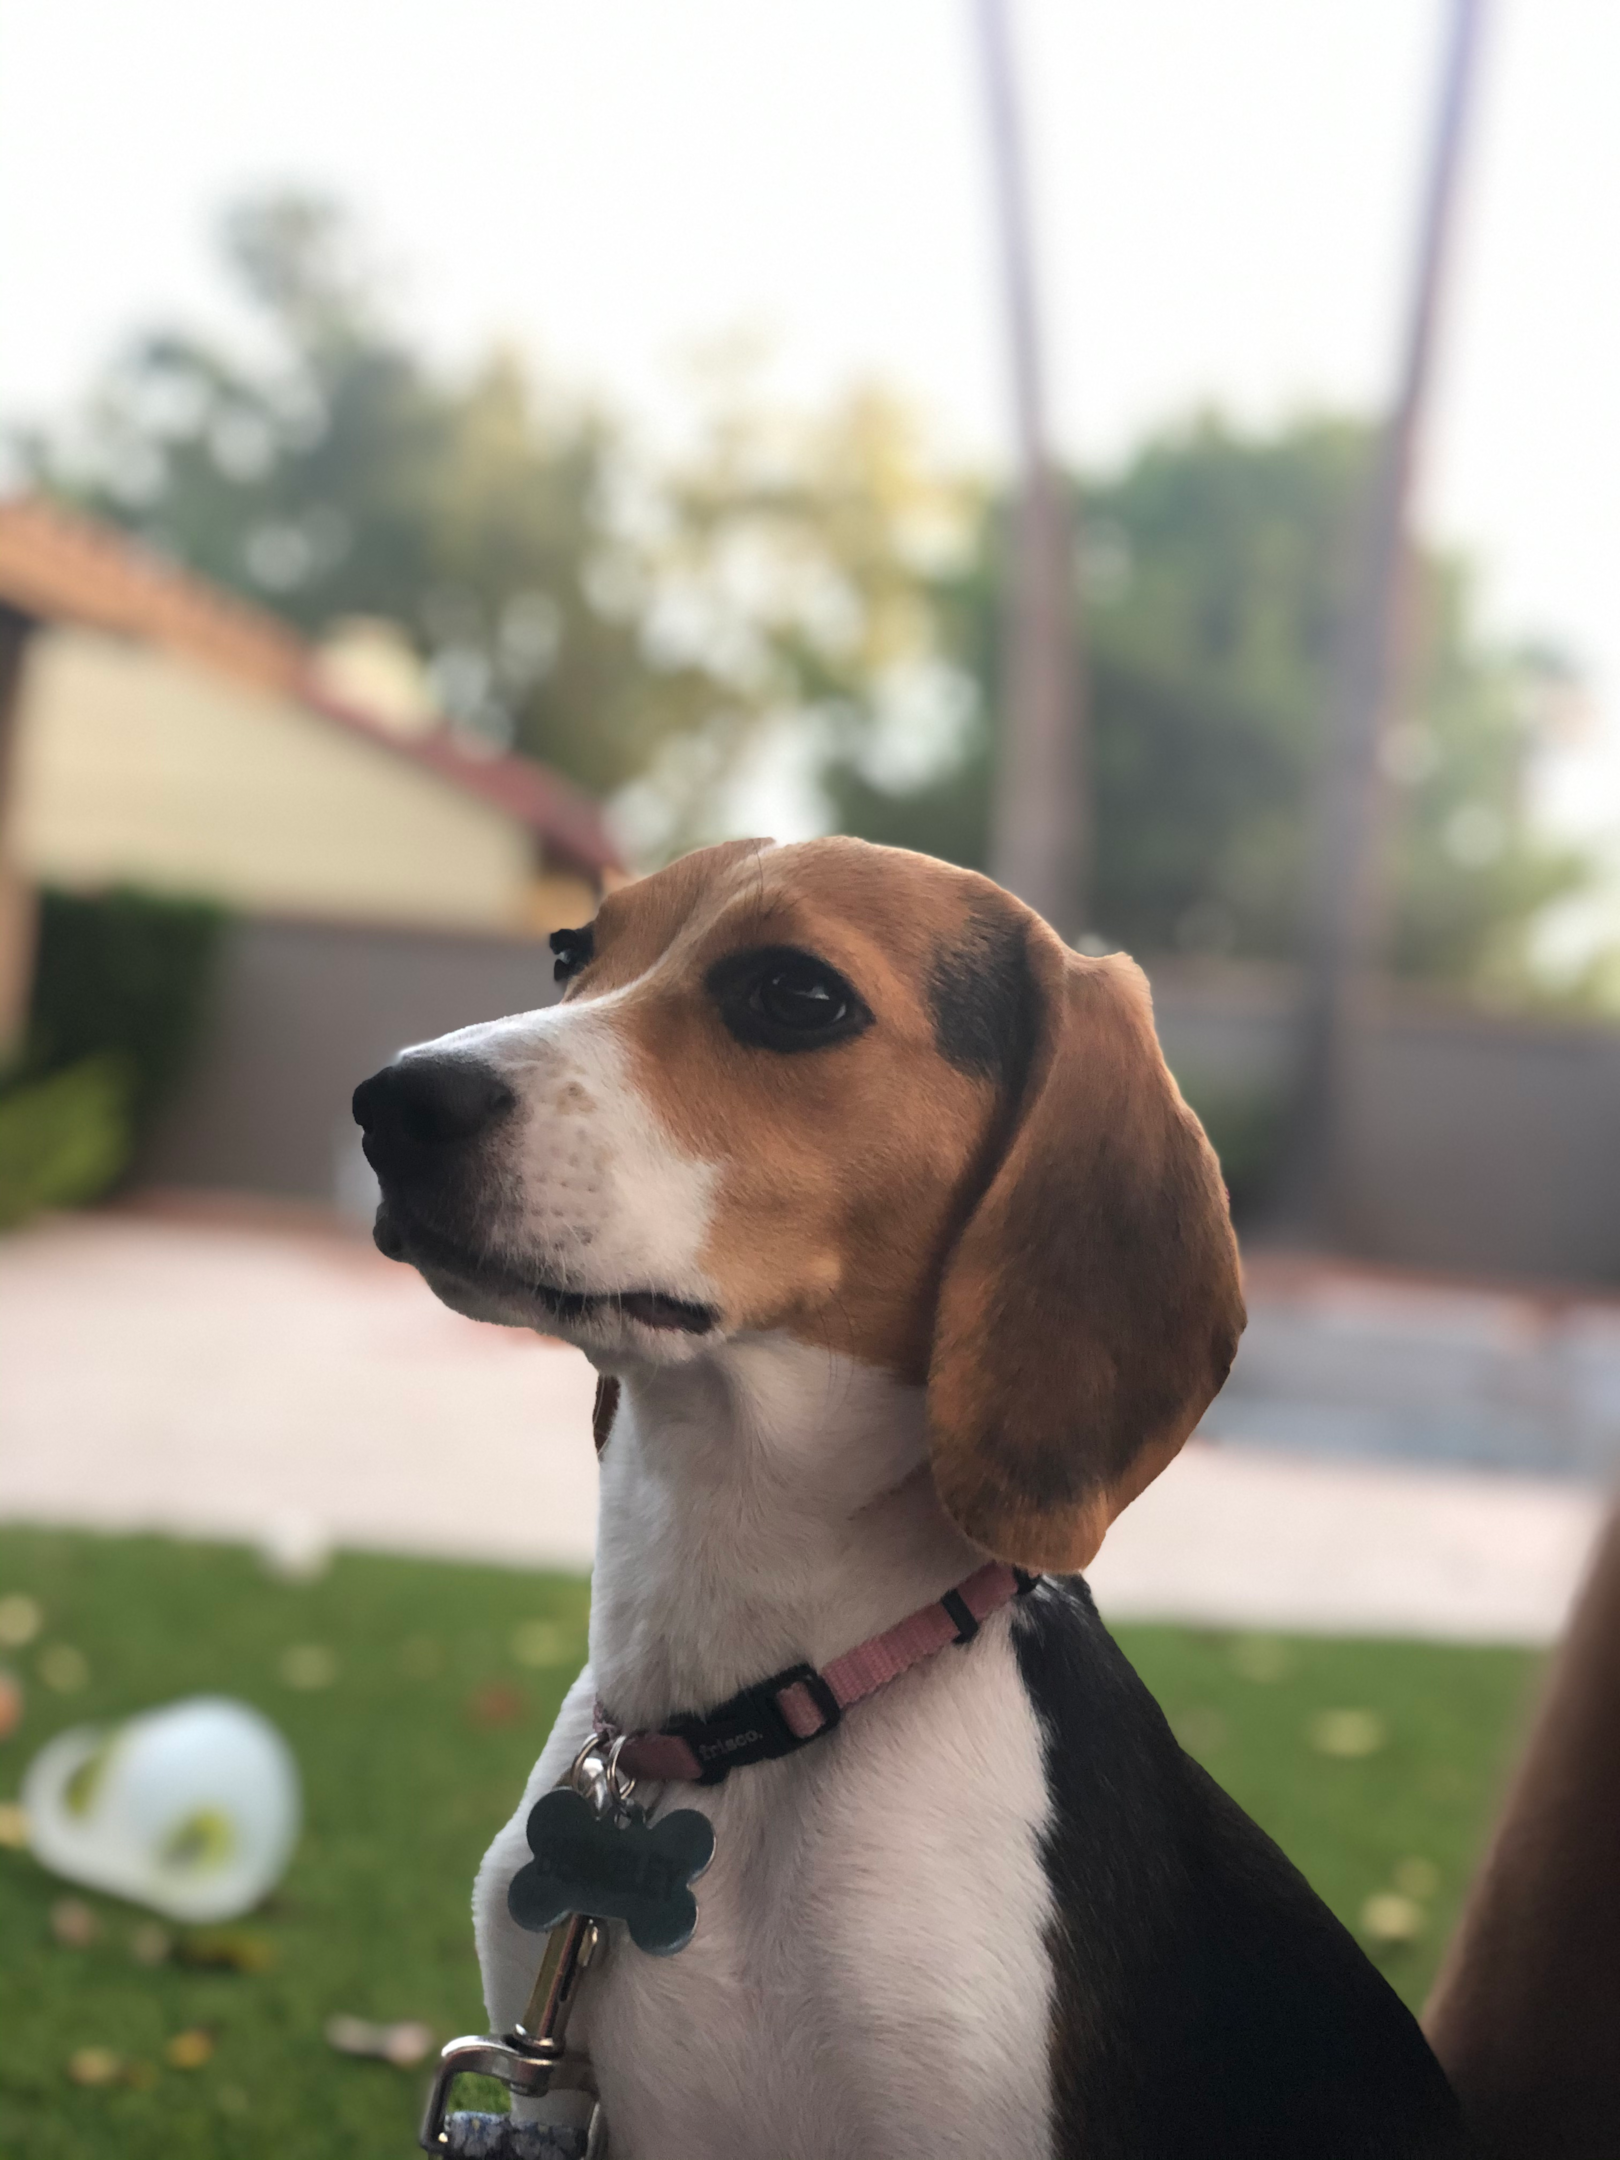 Beagle with floppy cute ears